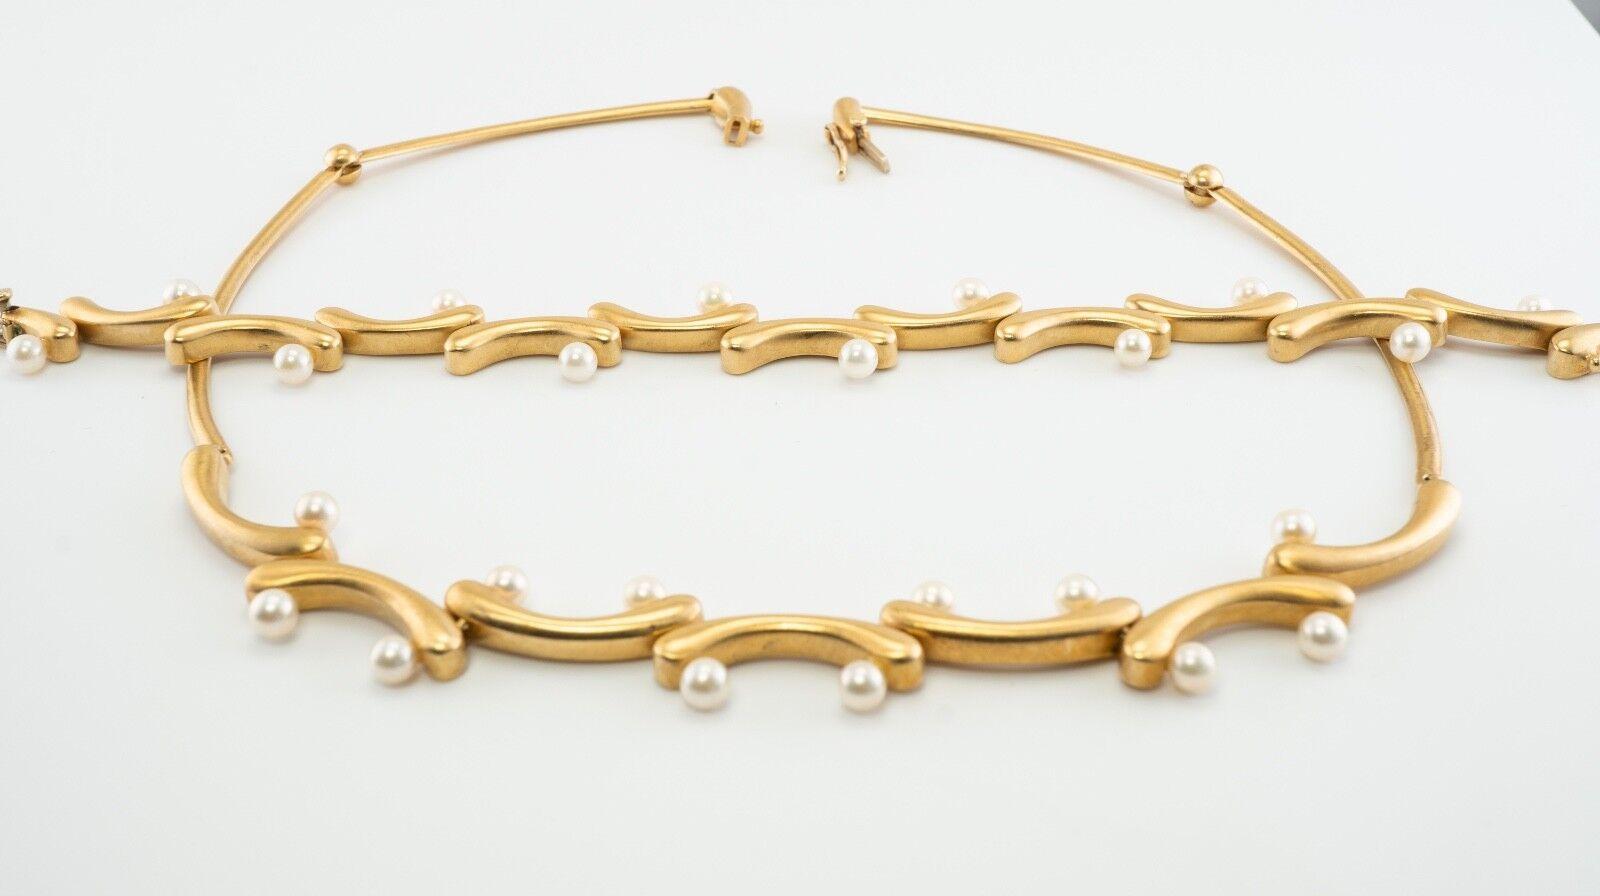 Akiyo Matsuoka Akoya Perlen-Halskette-Armband Set 18K Gold

Die Perlen sind jeweils 4 mm groß und haben einen tollen Glanz, Symmetrie und eine schöne Haut. Beide, die Halskette und das Armband, sind sehr gut verarbeitet. Erstaunlicher Stil und